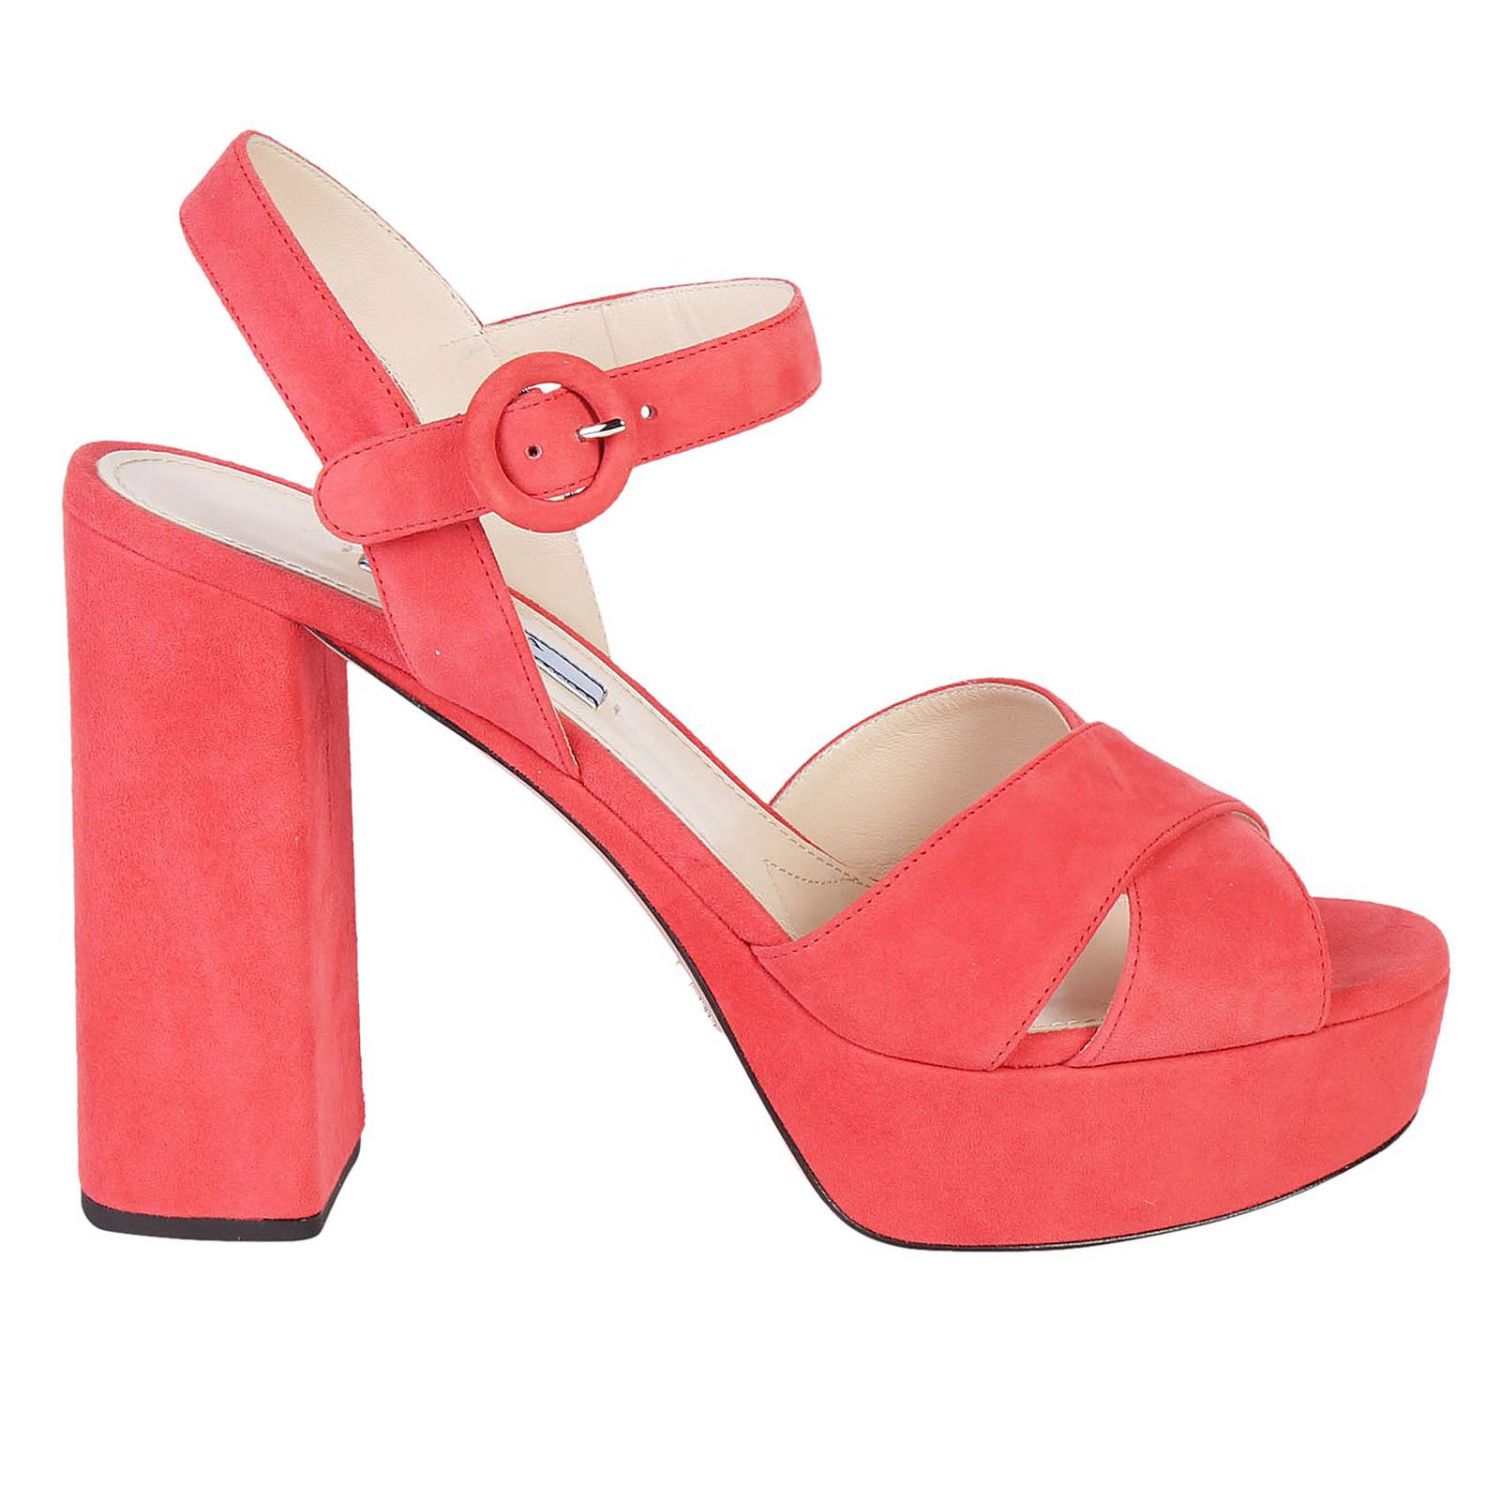 PRADA: Shoes women - Coral | Heeled Sandals Prada 1XP992 008 GIGLIO.COM